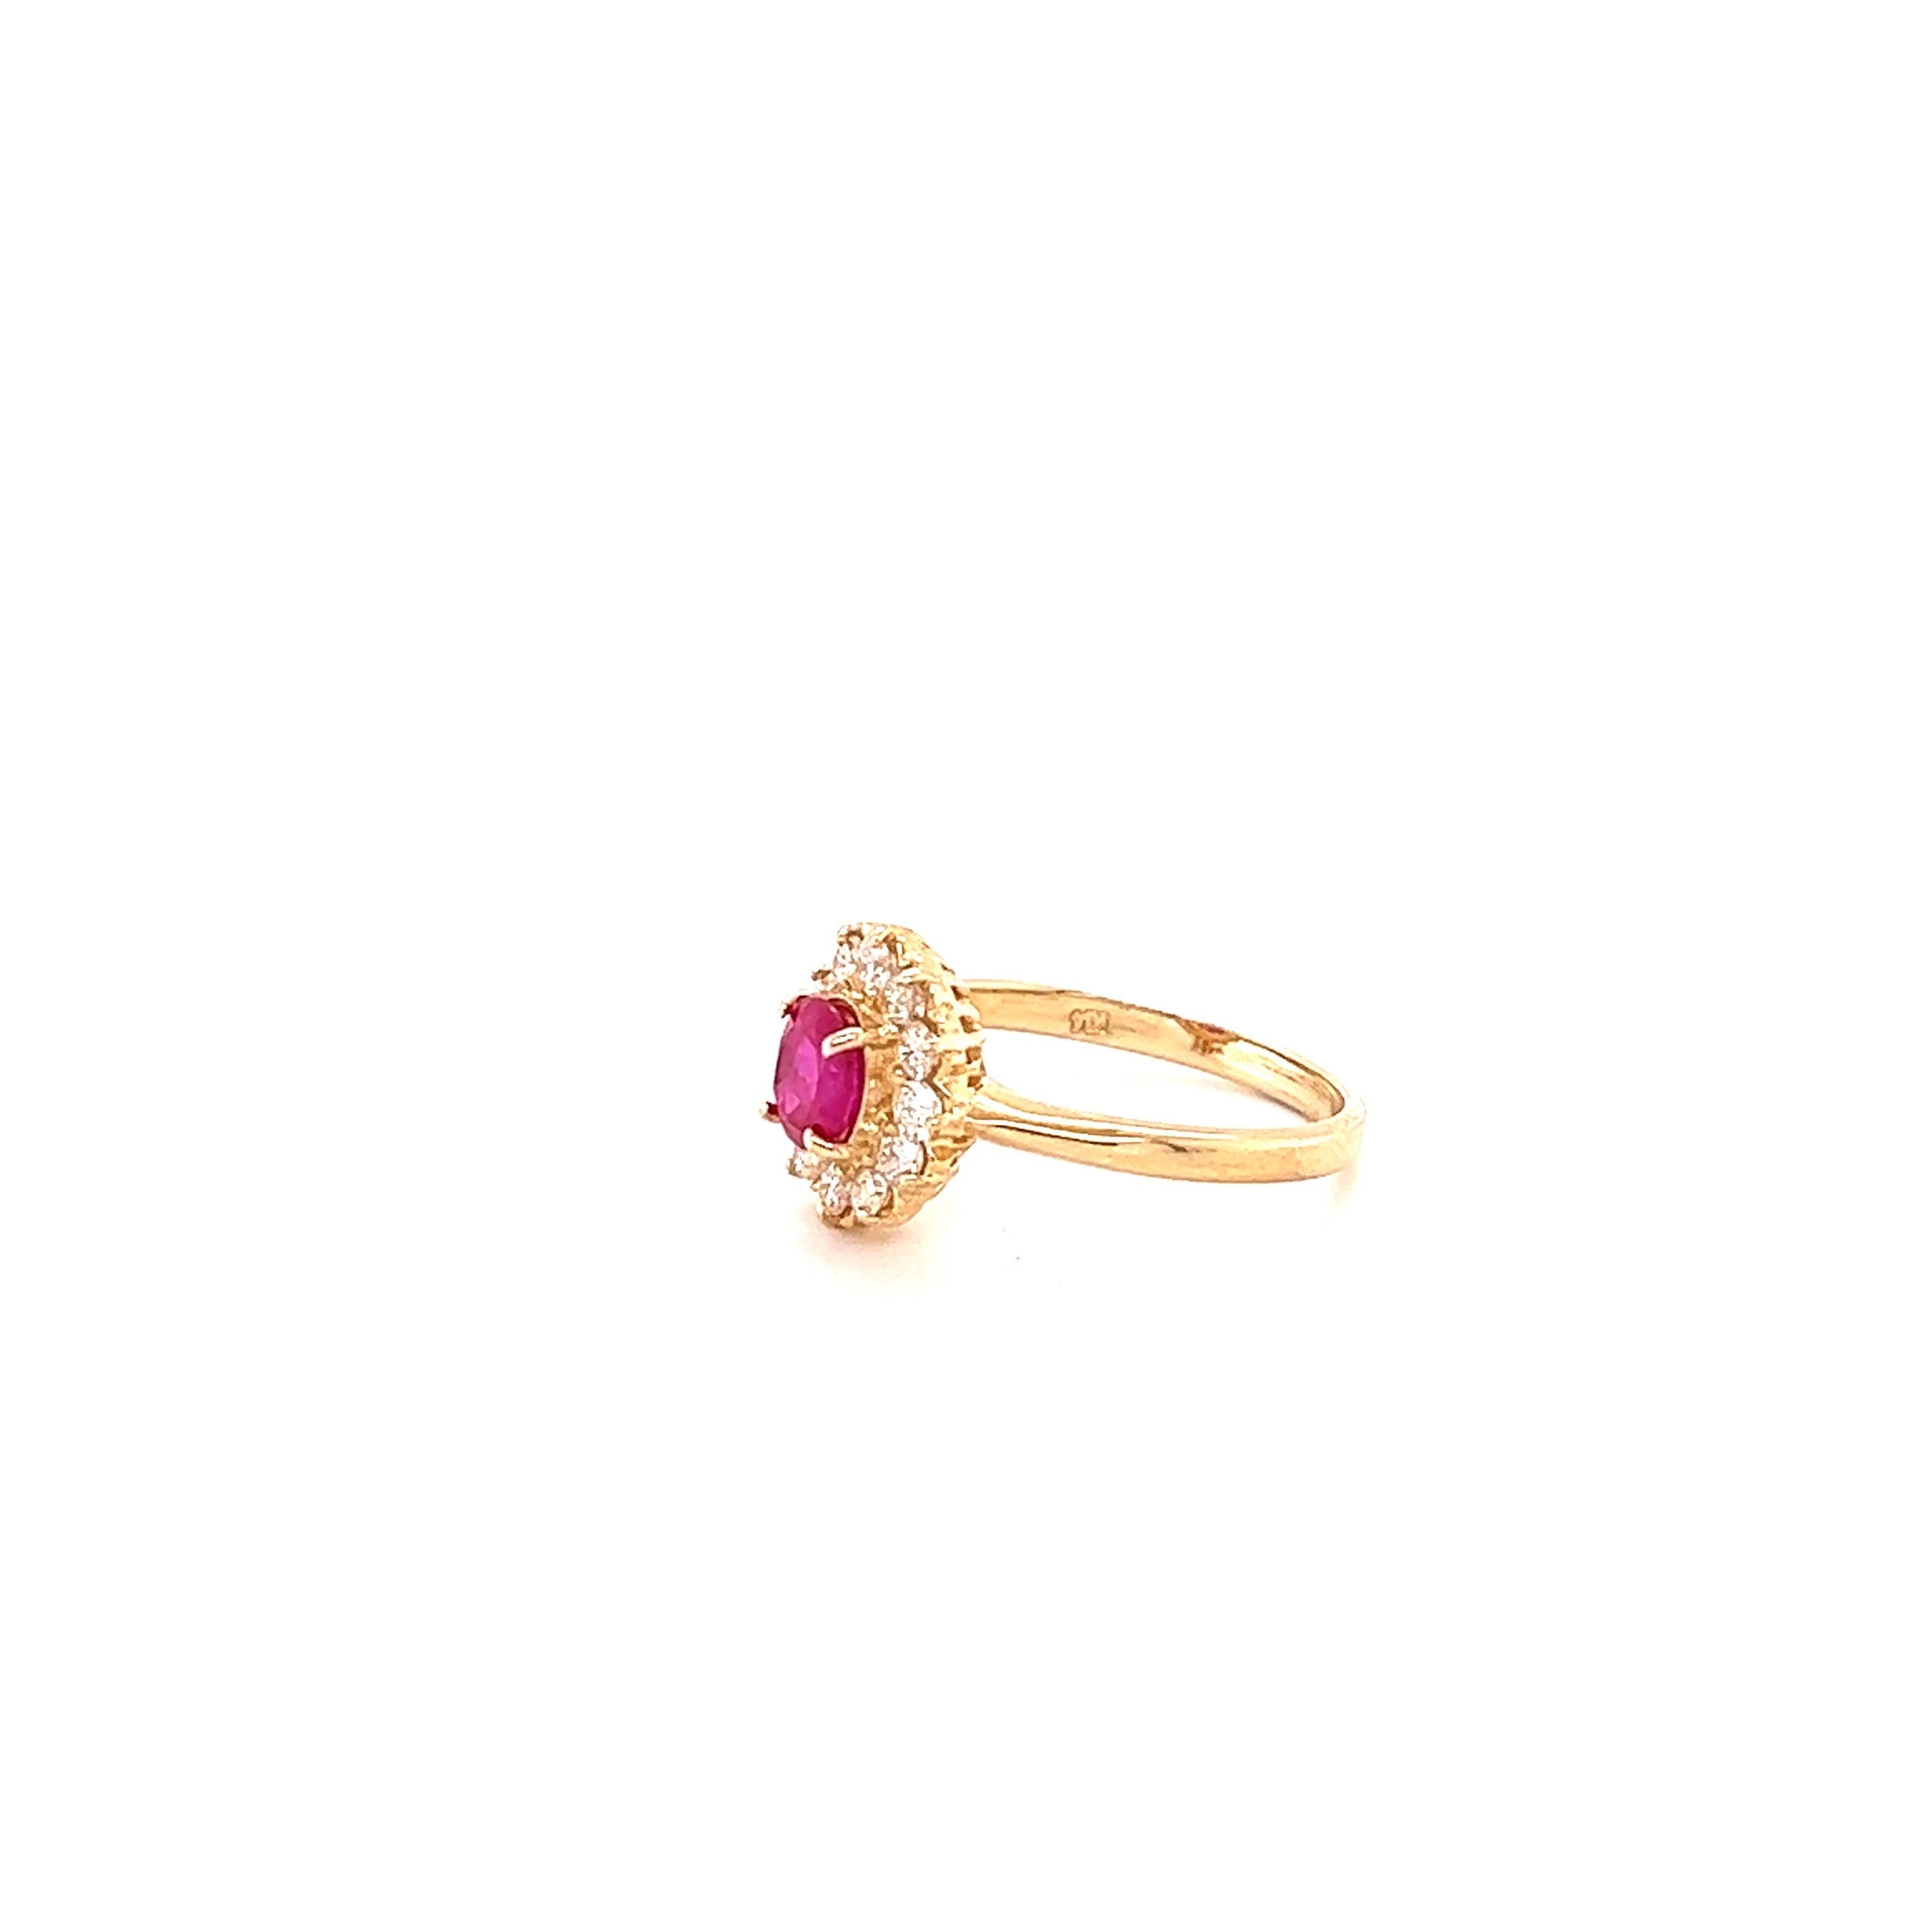  Bague Ballerina Ruby Diamond avec un rubis de taille ovale de 0,68 carat, entouré de 12 diamants de taille ronde pesant 0,42 carat. Le poids total en carats de la bague est de 1.10 carats. La clarté et la couleur des diamants sont SI1-F. Le rubis